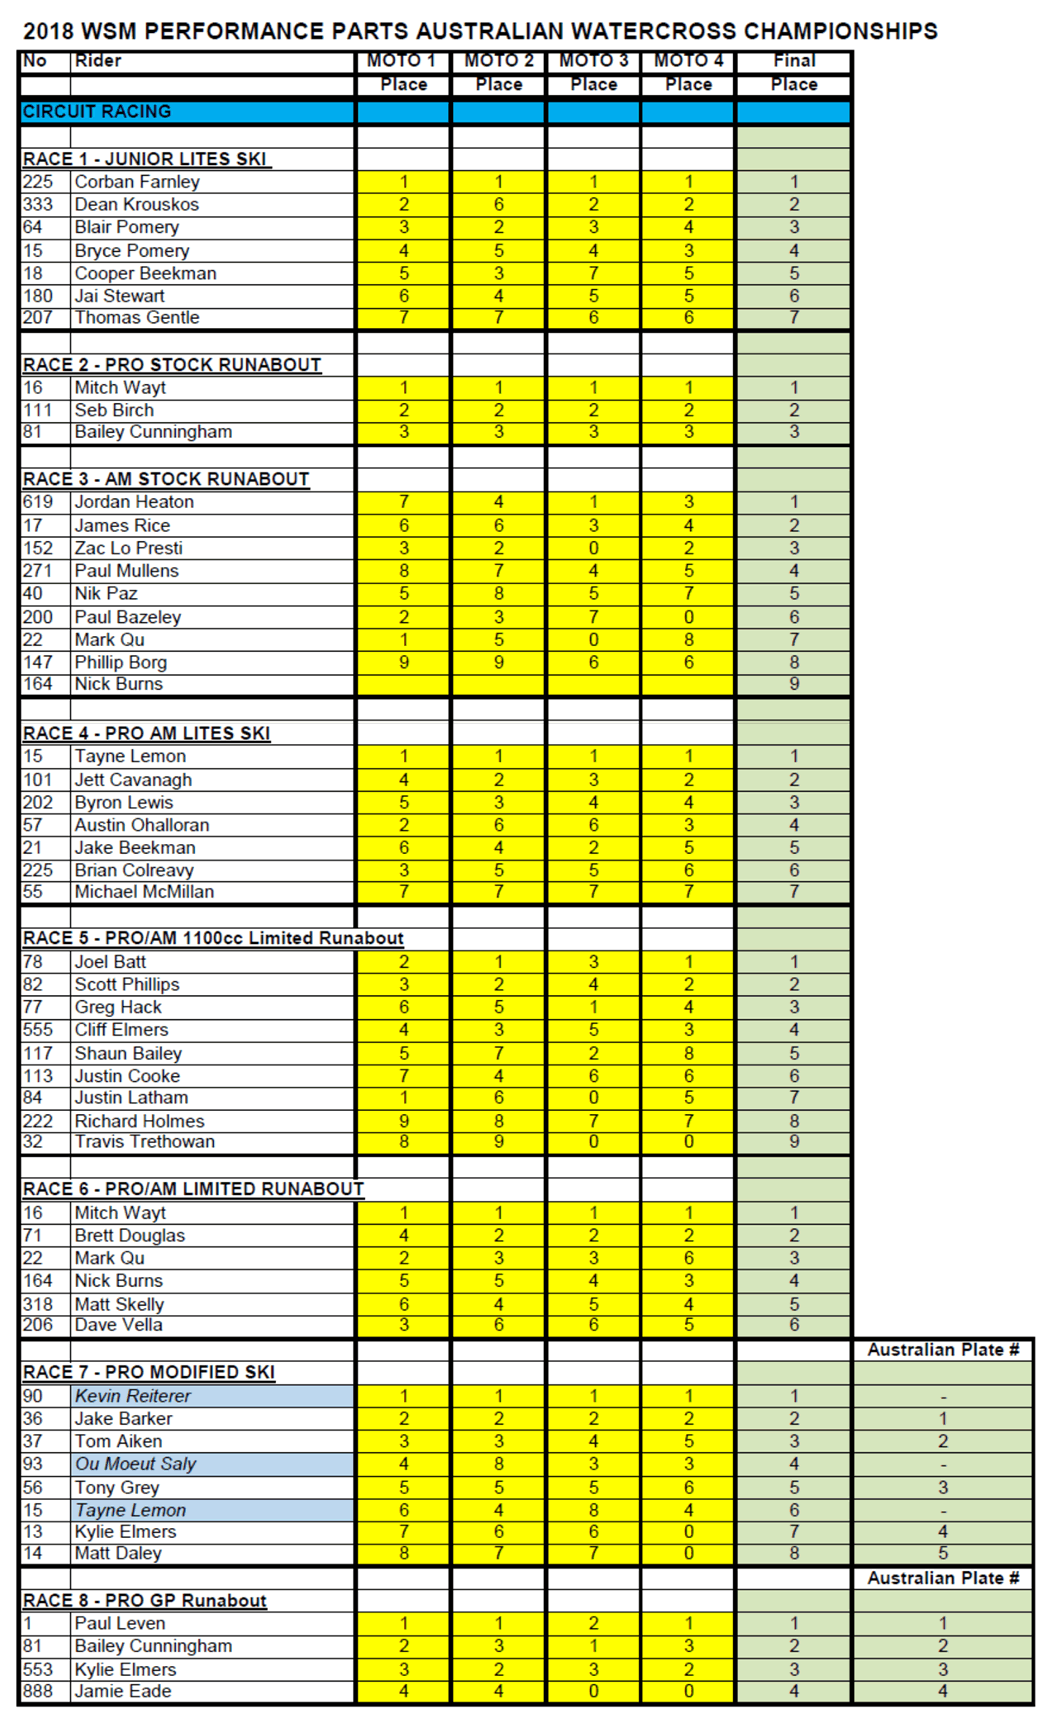 2018 WSM Australian Watercross Results - SAFE